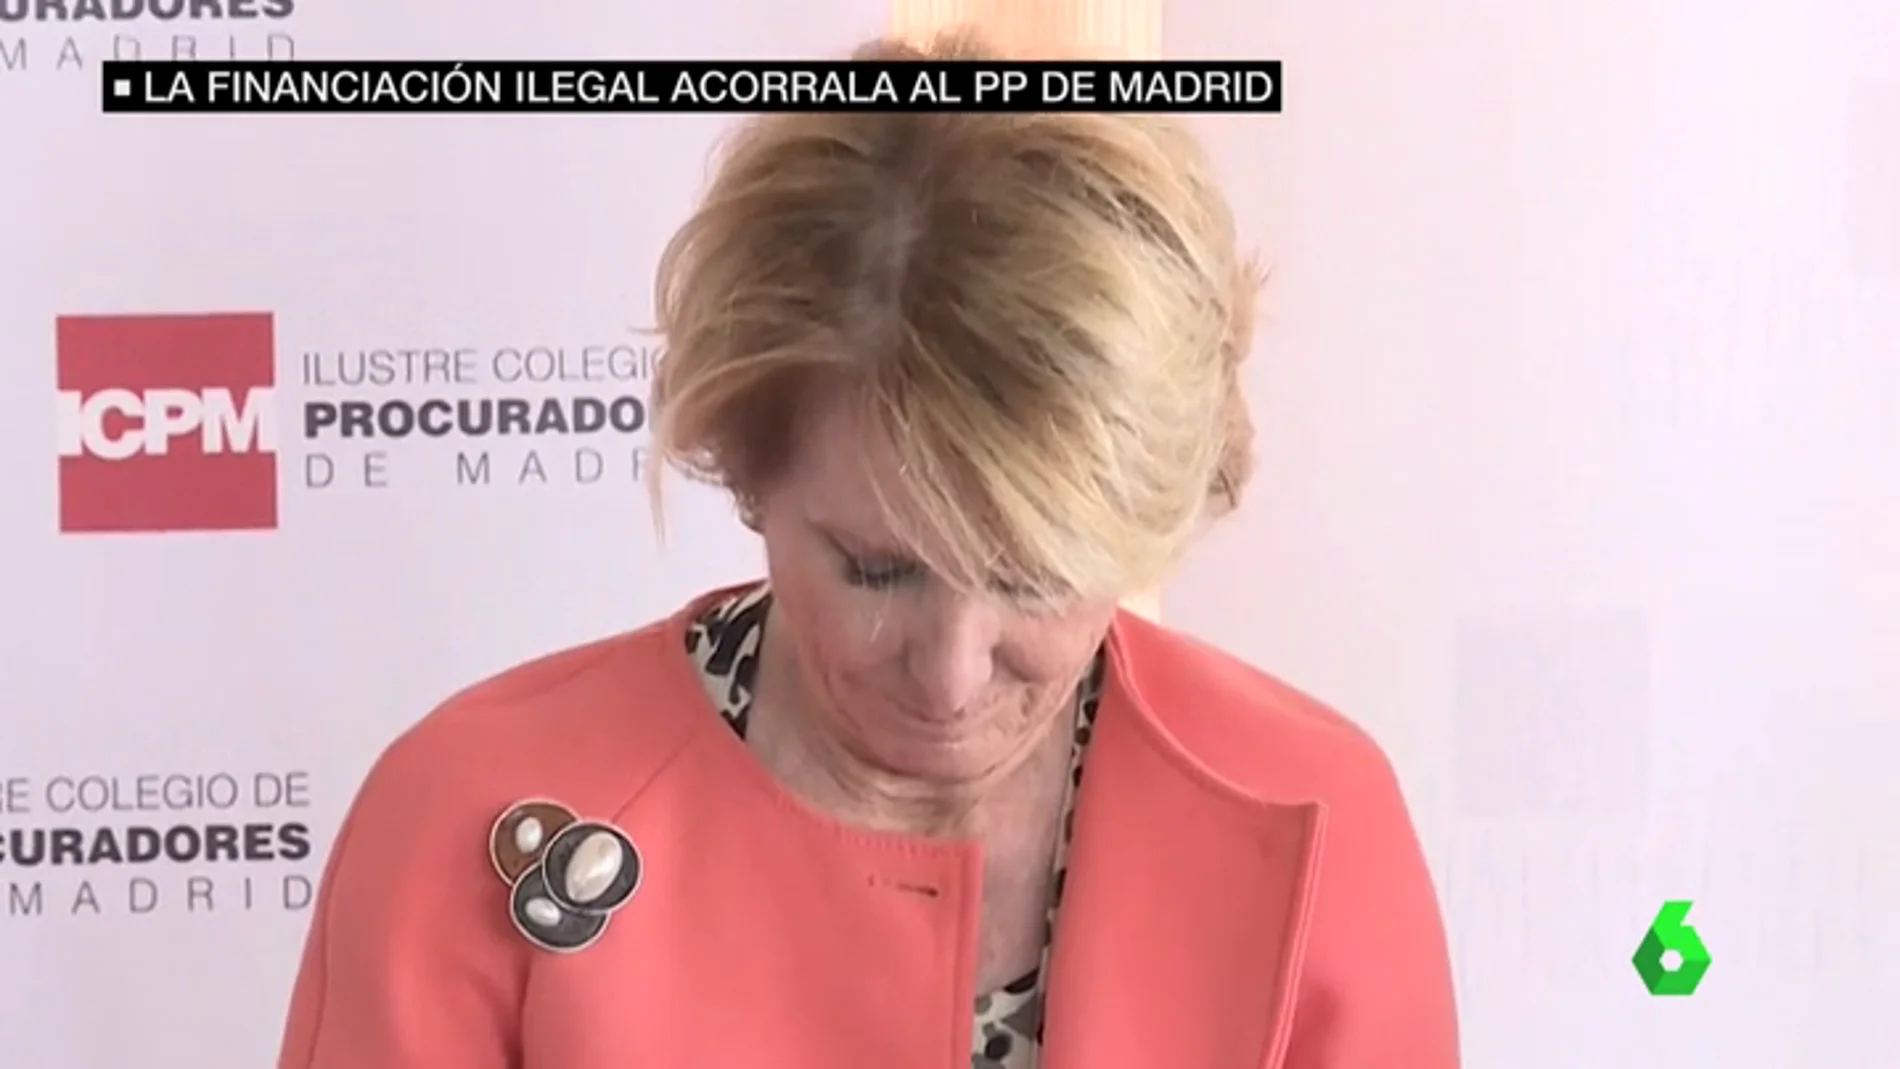 Frame 13.851439 de: El juez Velasco halla pruebas que demostrarían la financiación ilegal del PP de Madrid